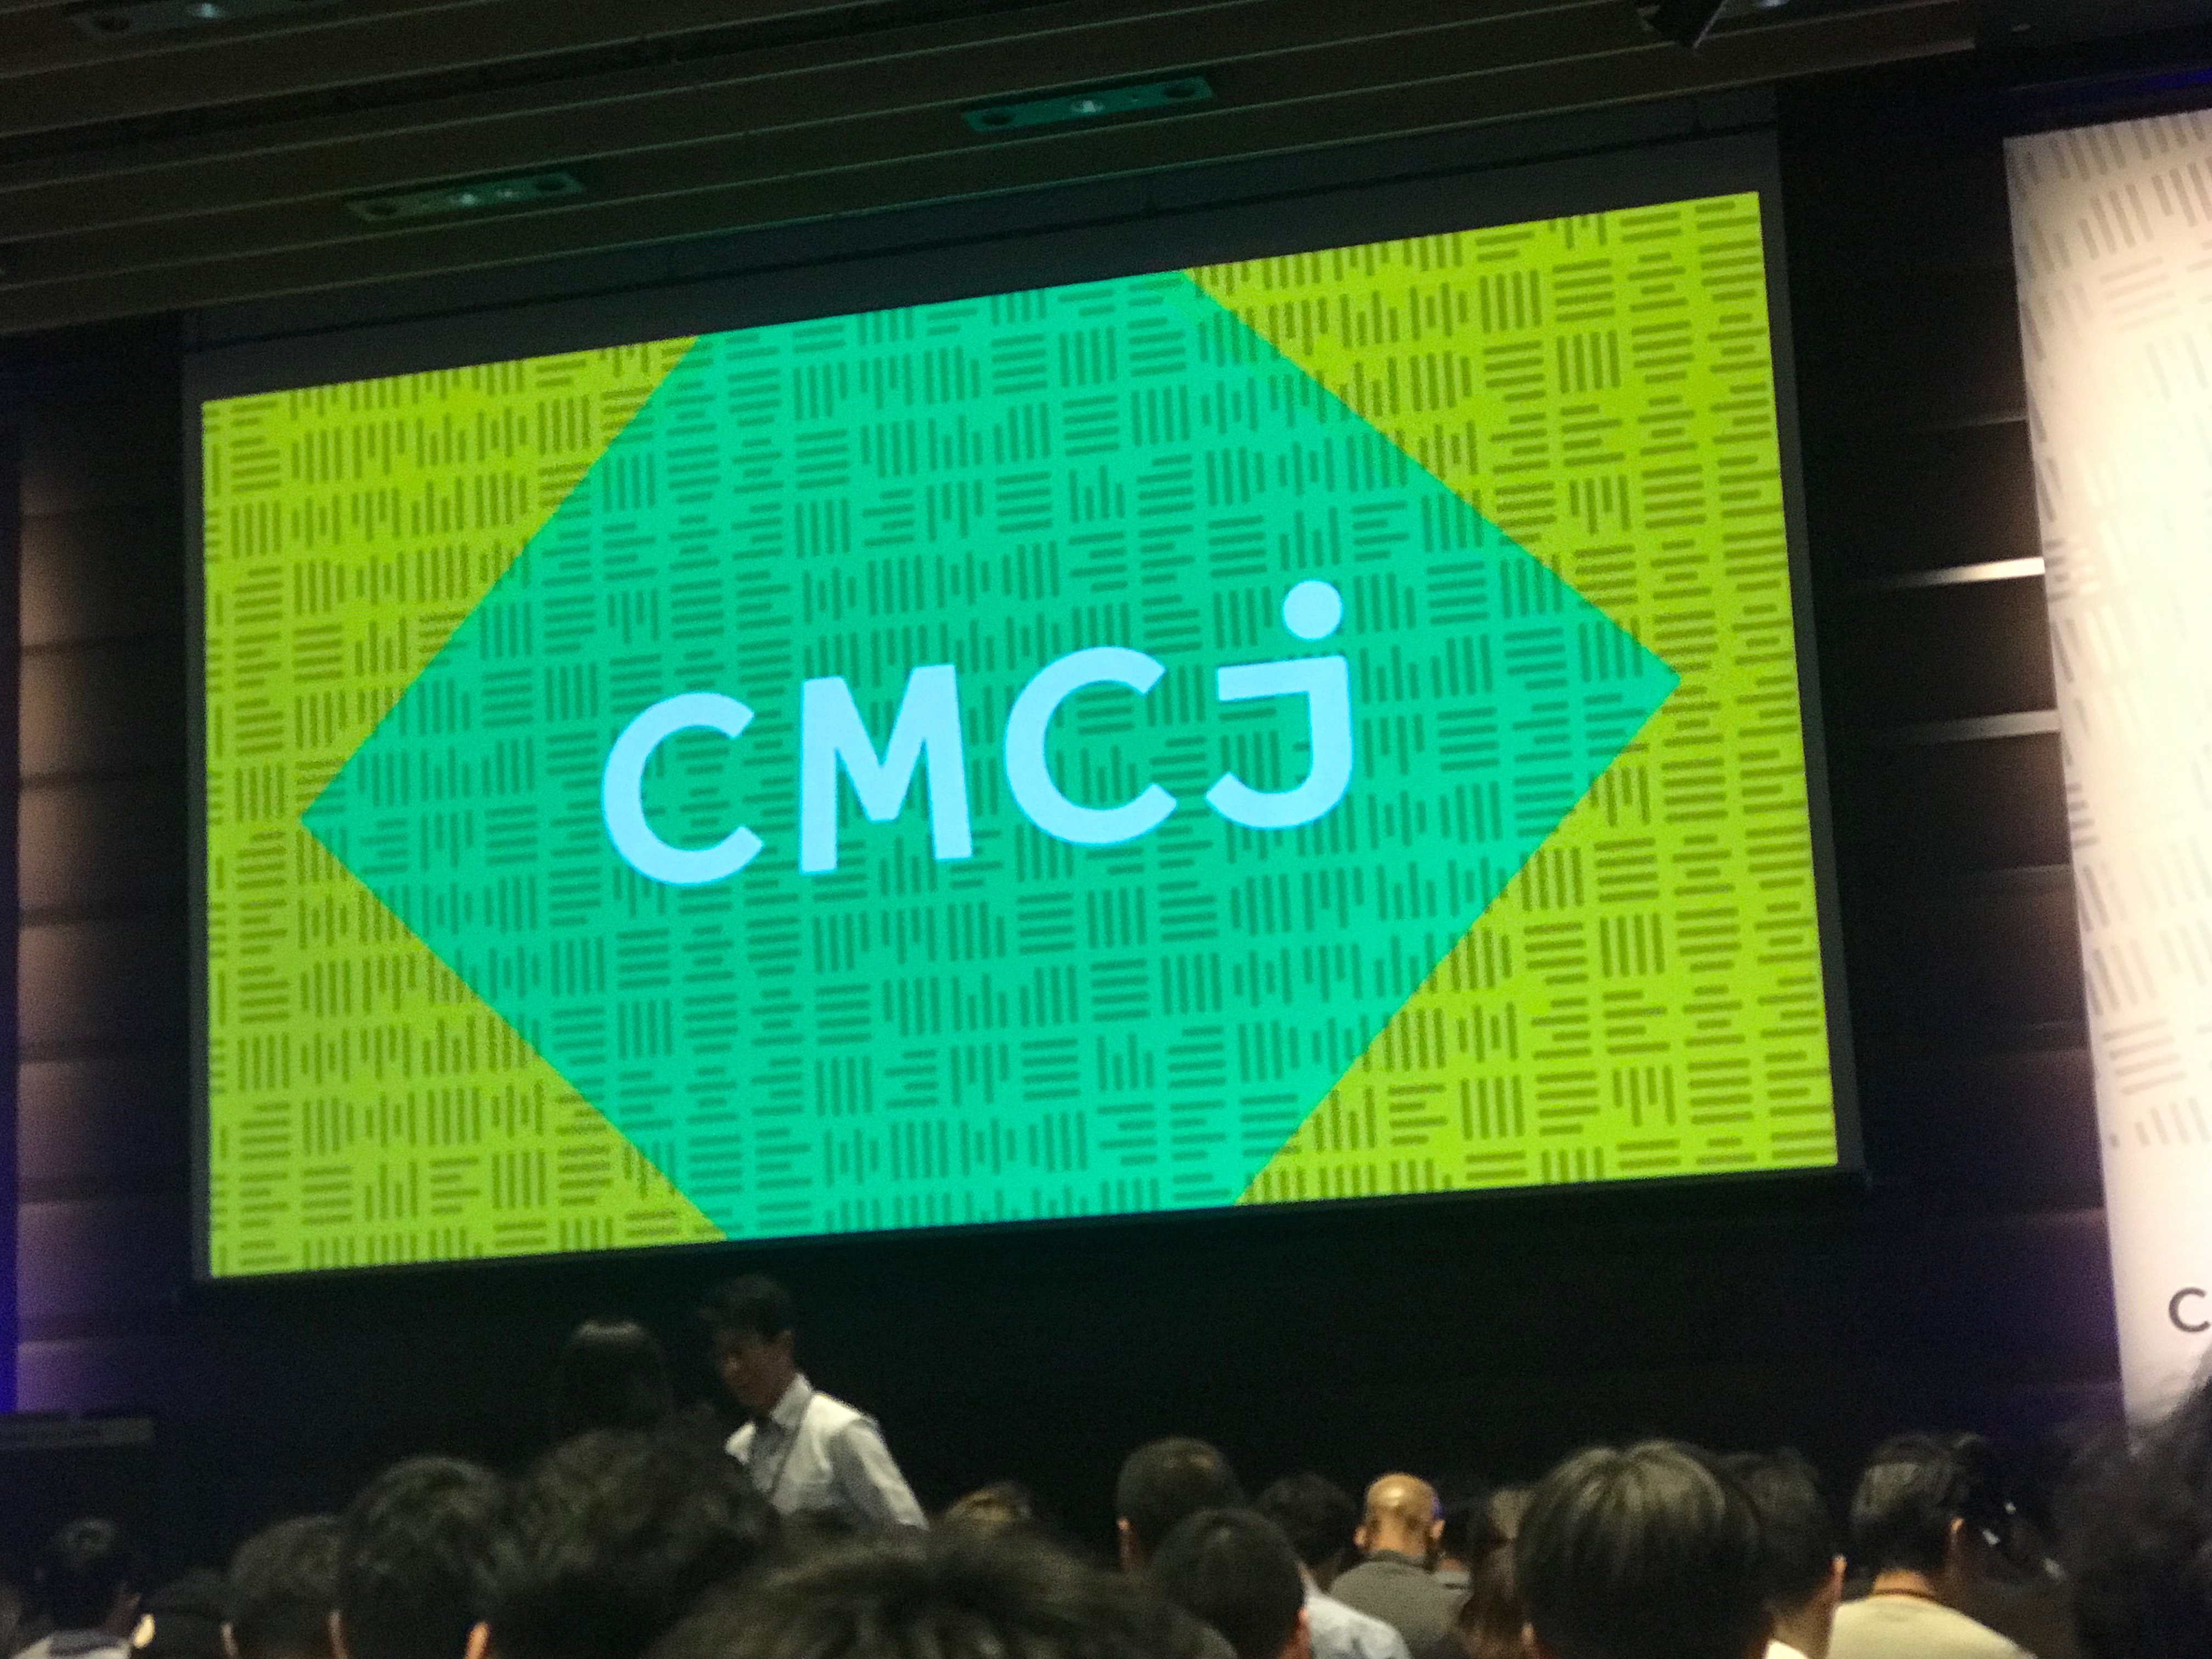 CMCJコンテンツマーケティング実践会議2019に参加して感じた「ユーザー主義」を貫くことの大切さ